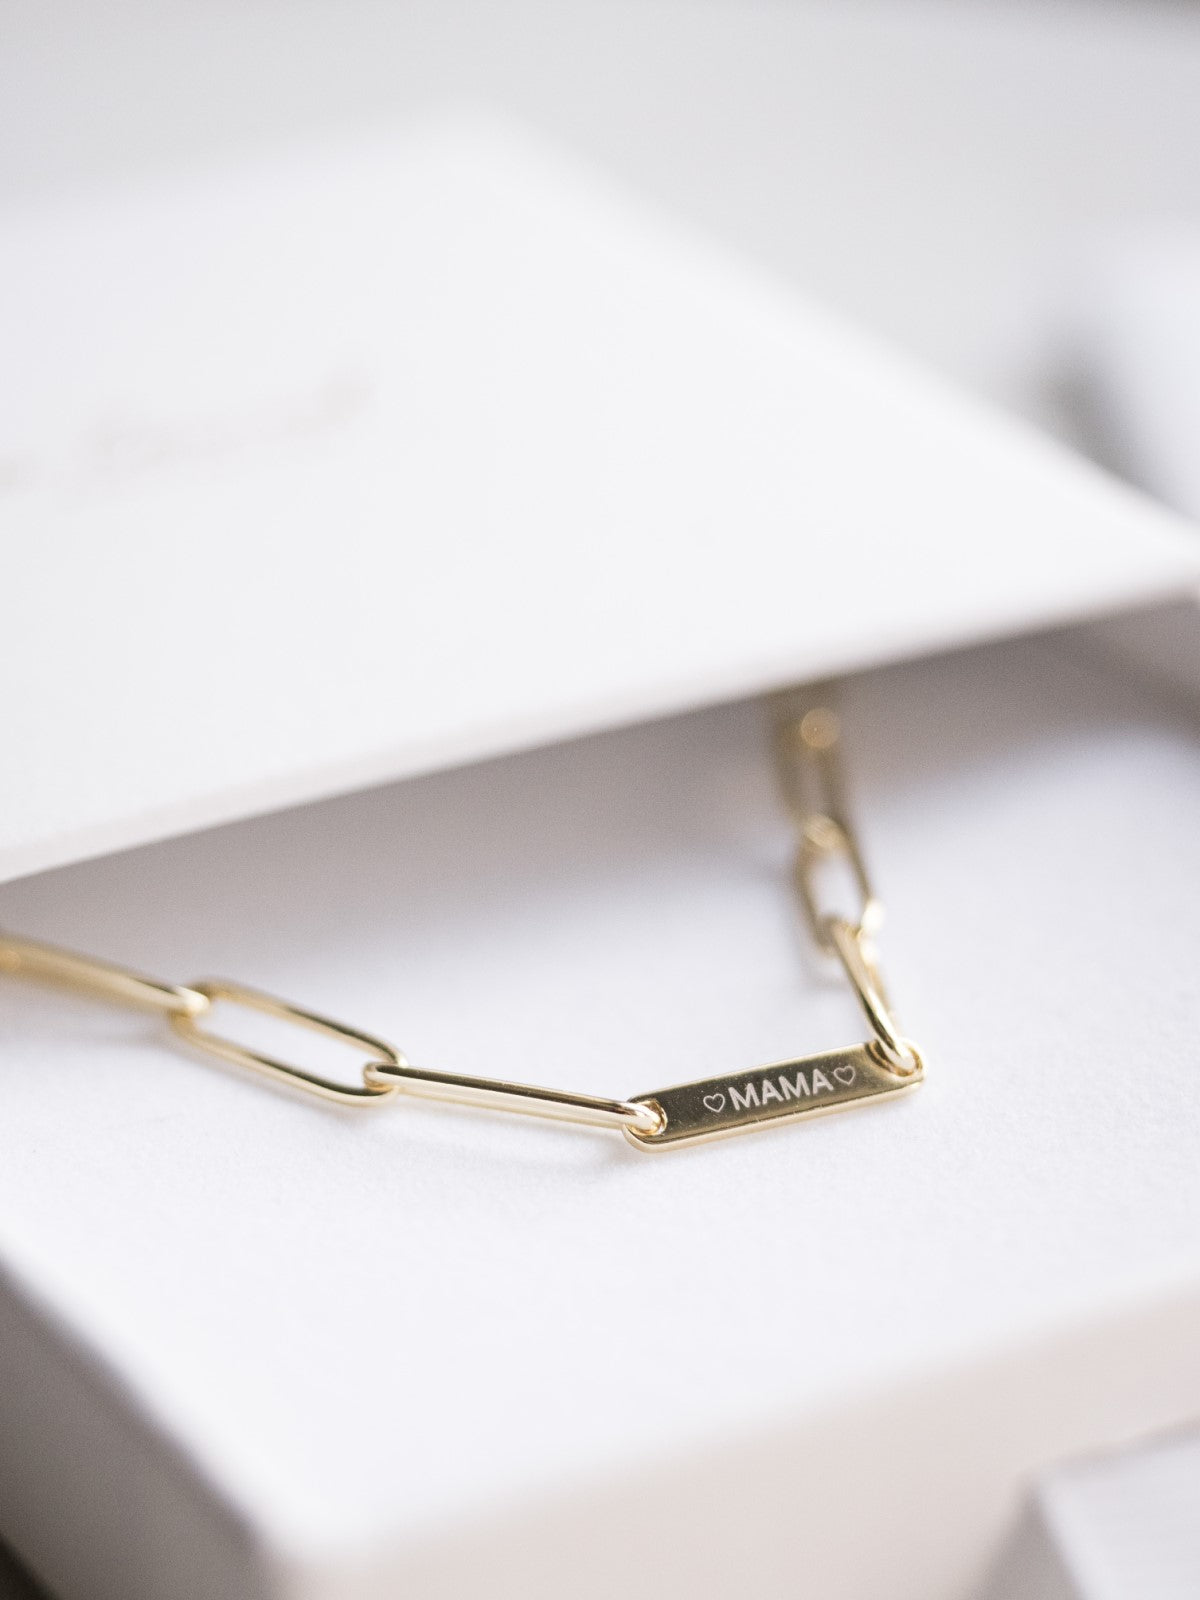 Family Chain Necklace Gold | Kette für €69.99 von So Loved Manufacture